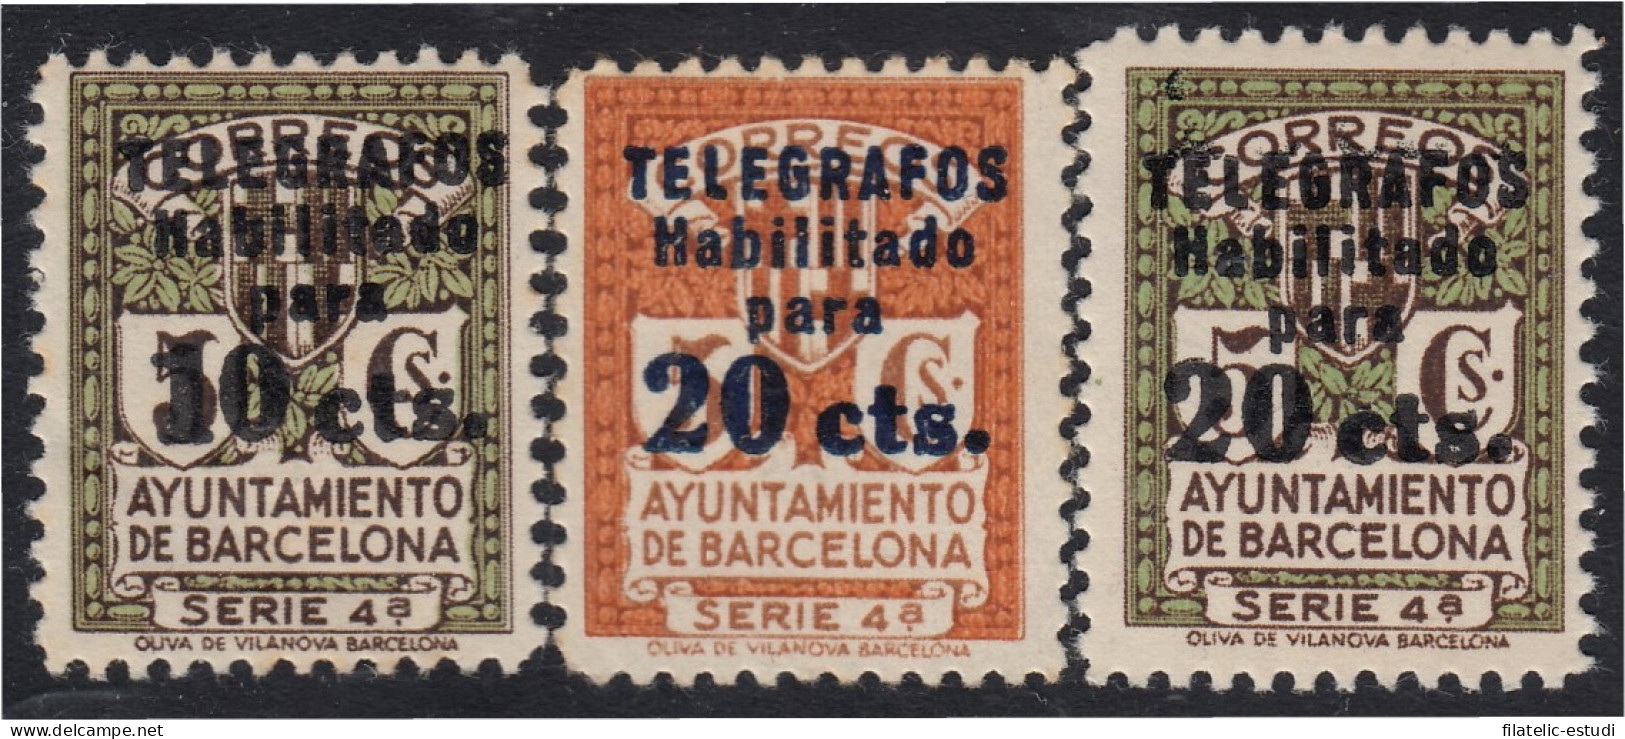 Barcelona Telégrafos 10/12 1936-38 Ayuntamiento De Barcelona MNH - Barcellona